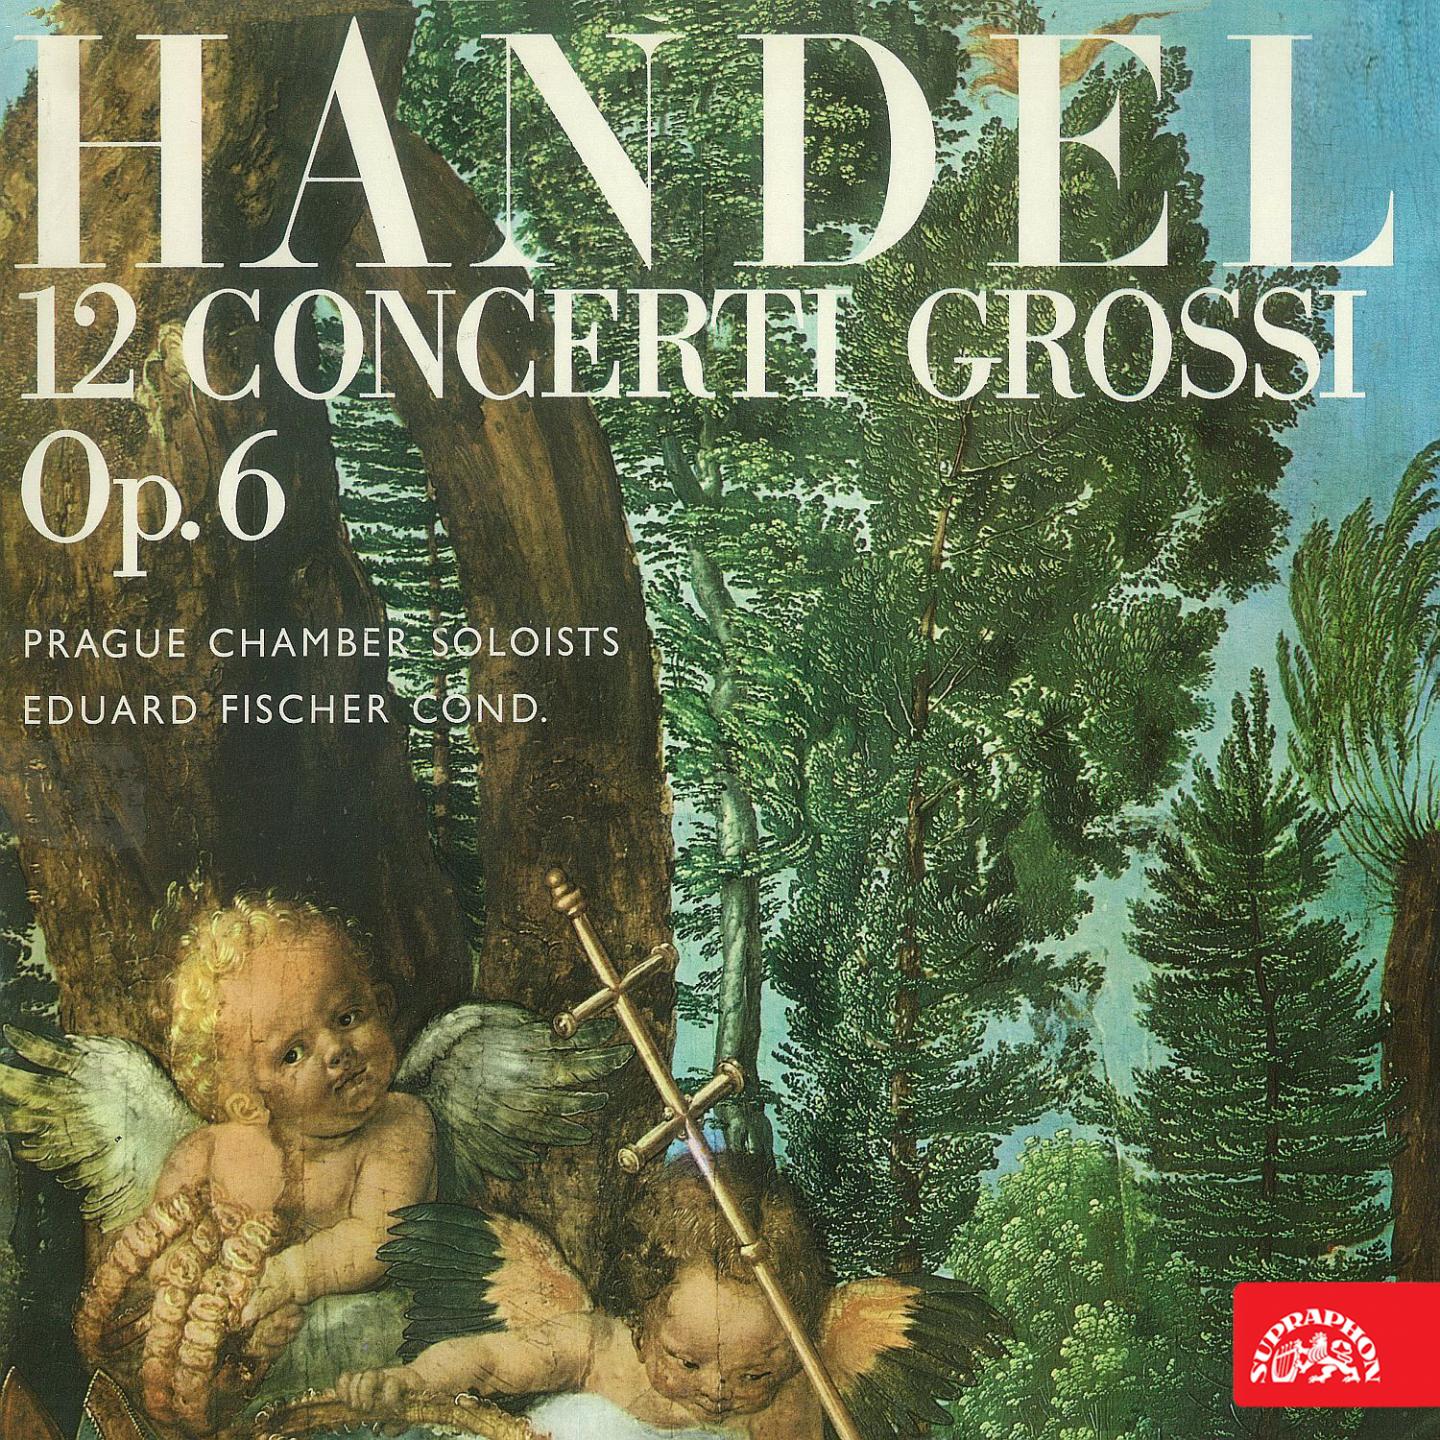 12 Concerti grossi, Op. 6, No. 8 in C Minor, HWV 326: II. Grave